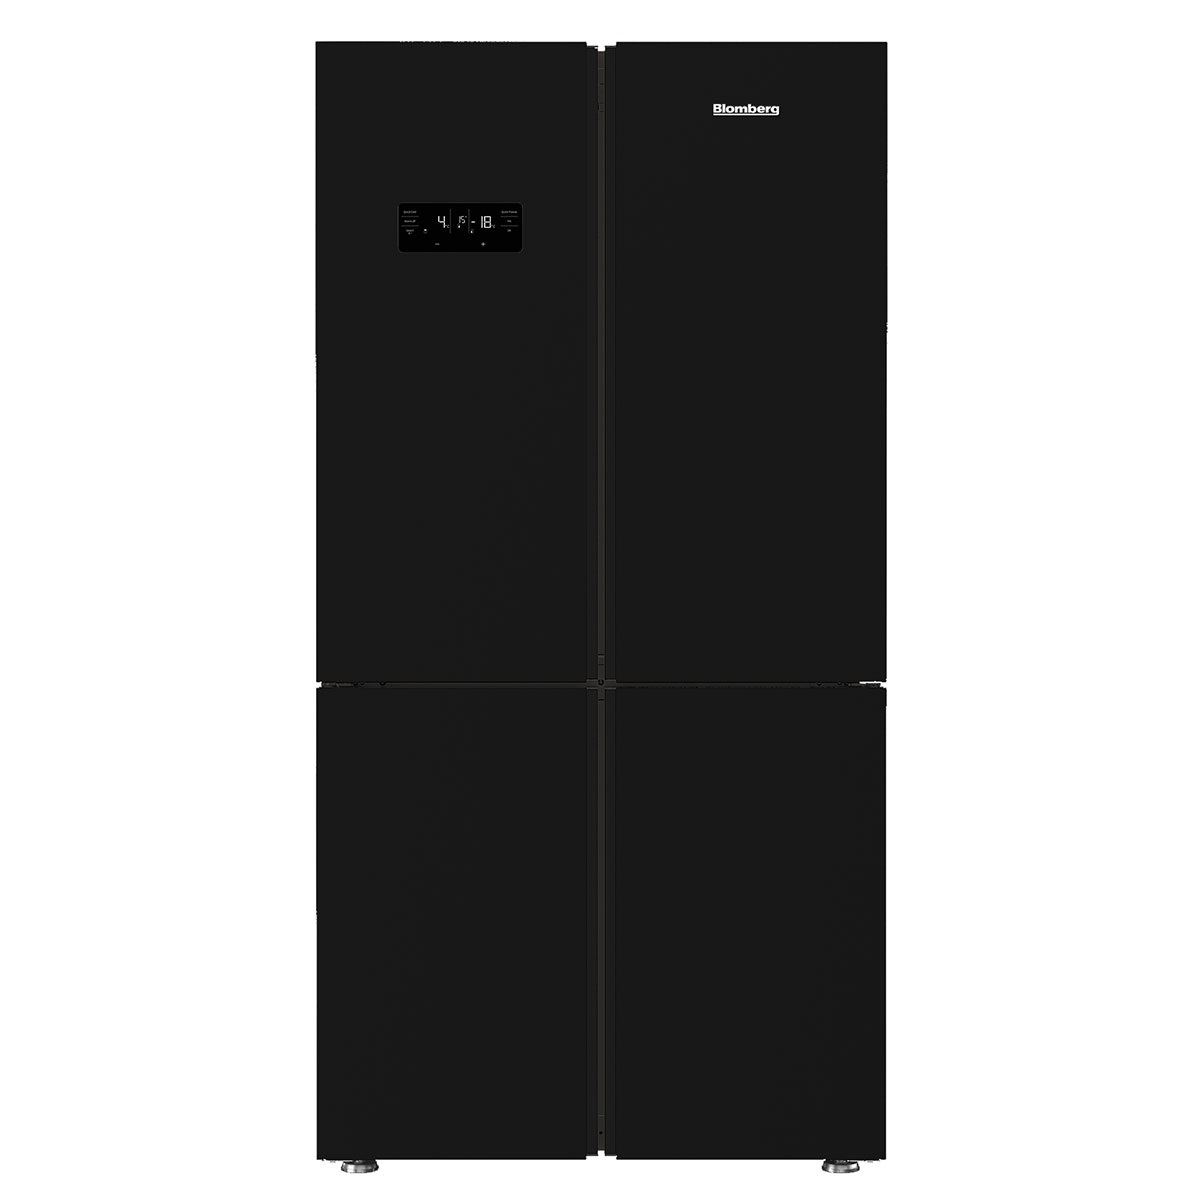 מקרר 4 דלתות נפח כולל 572 ליטר זכוכית שחורה BLOMBERG דגם KQD1622GB בלומברג  - תמונה 1